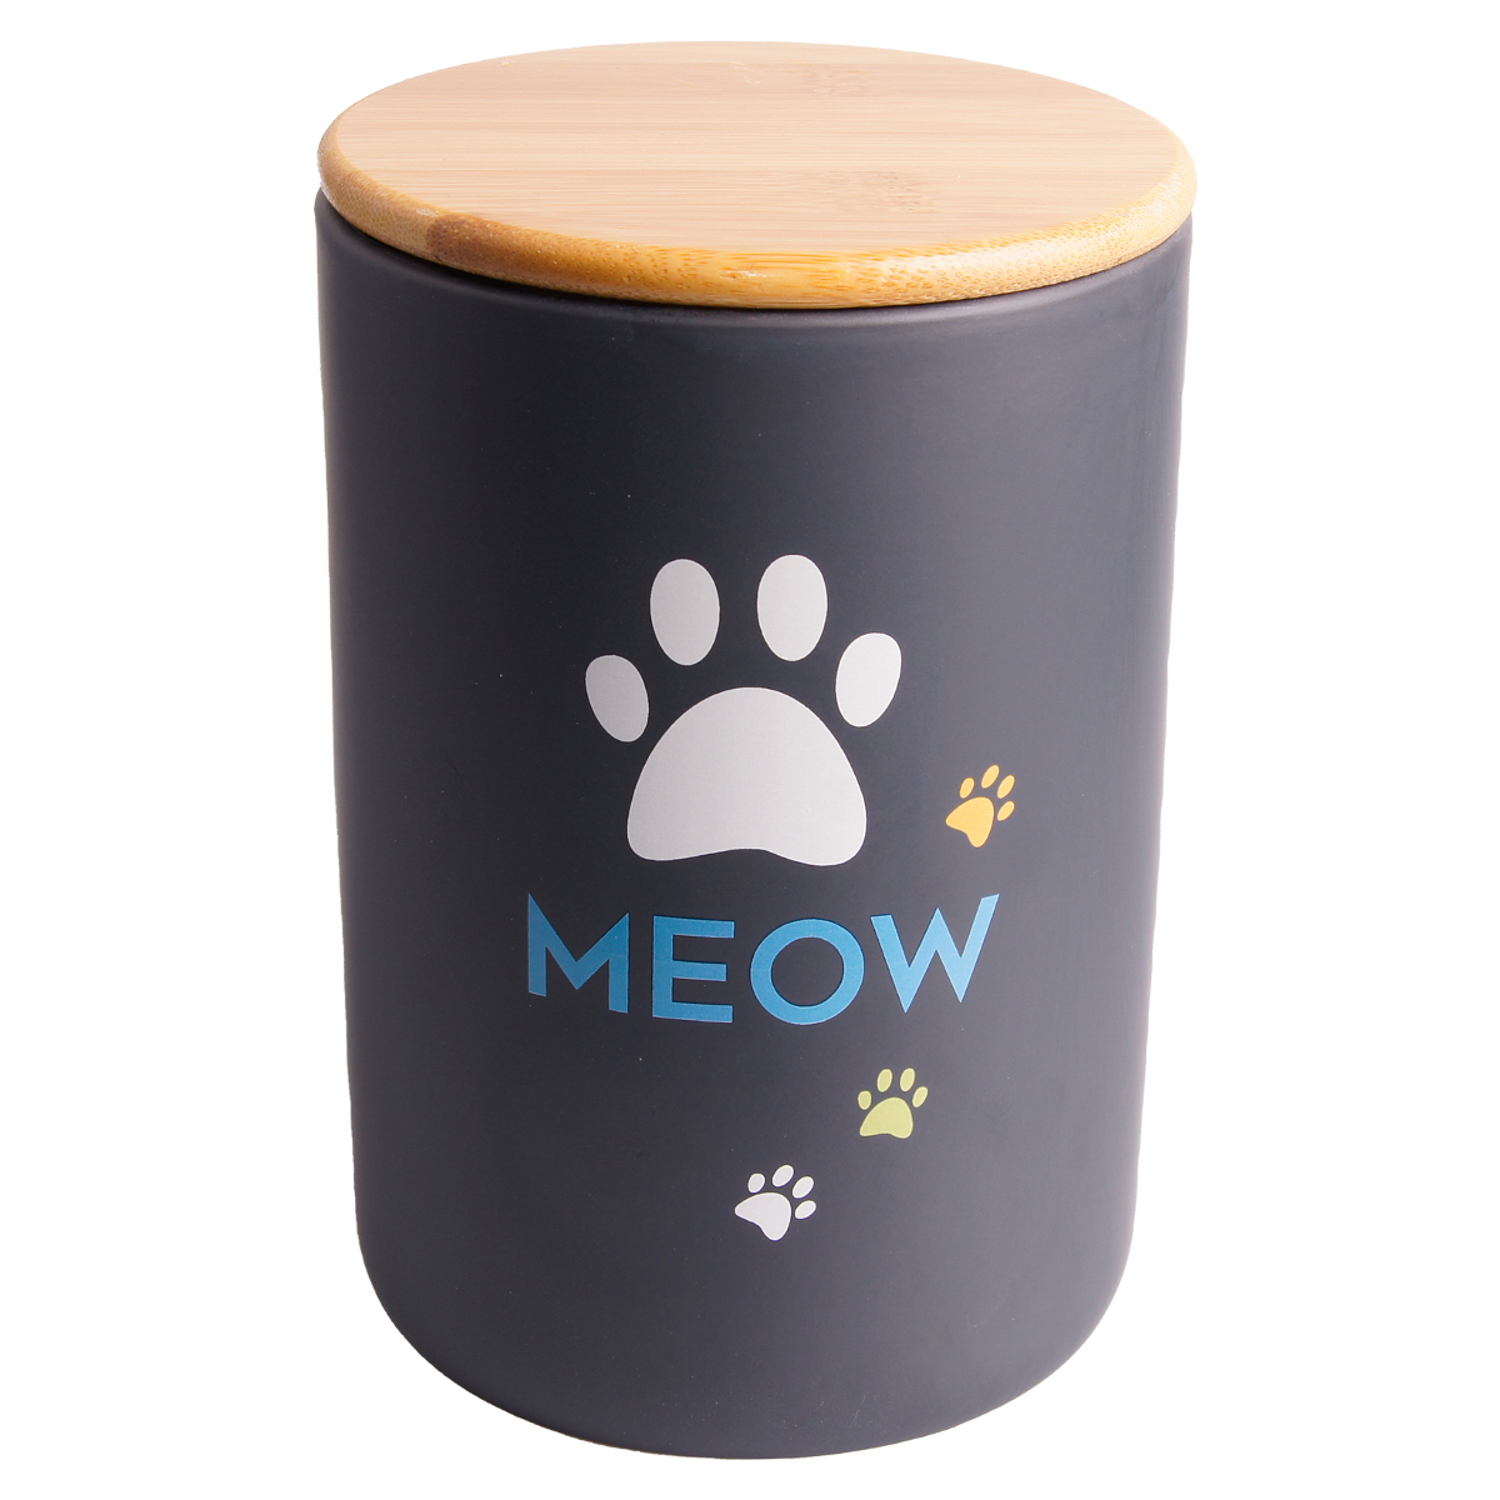 бокс керамический для хранения корма для кошек "mr.kranch meow", 1900 мл (черный)